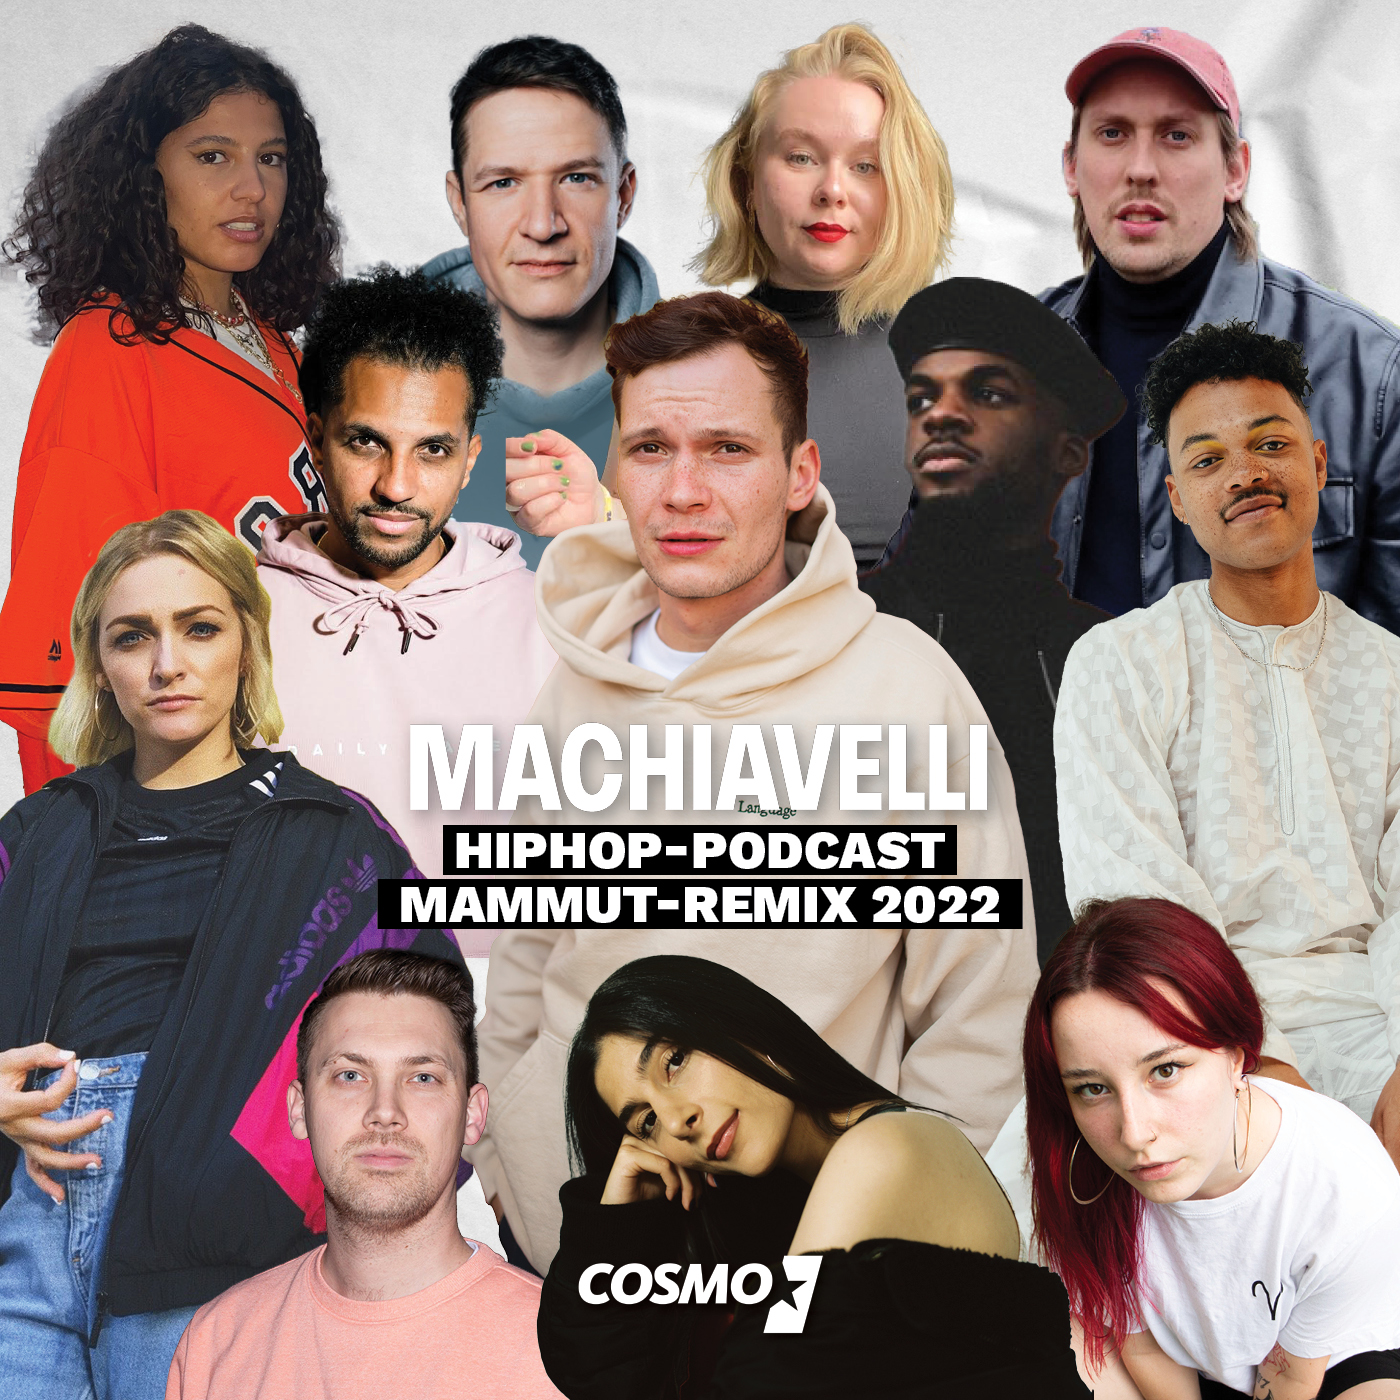 HipHop-Podcast Mammut-Remix 2022